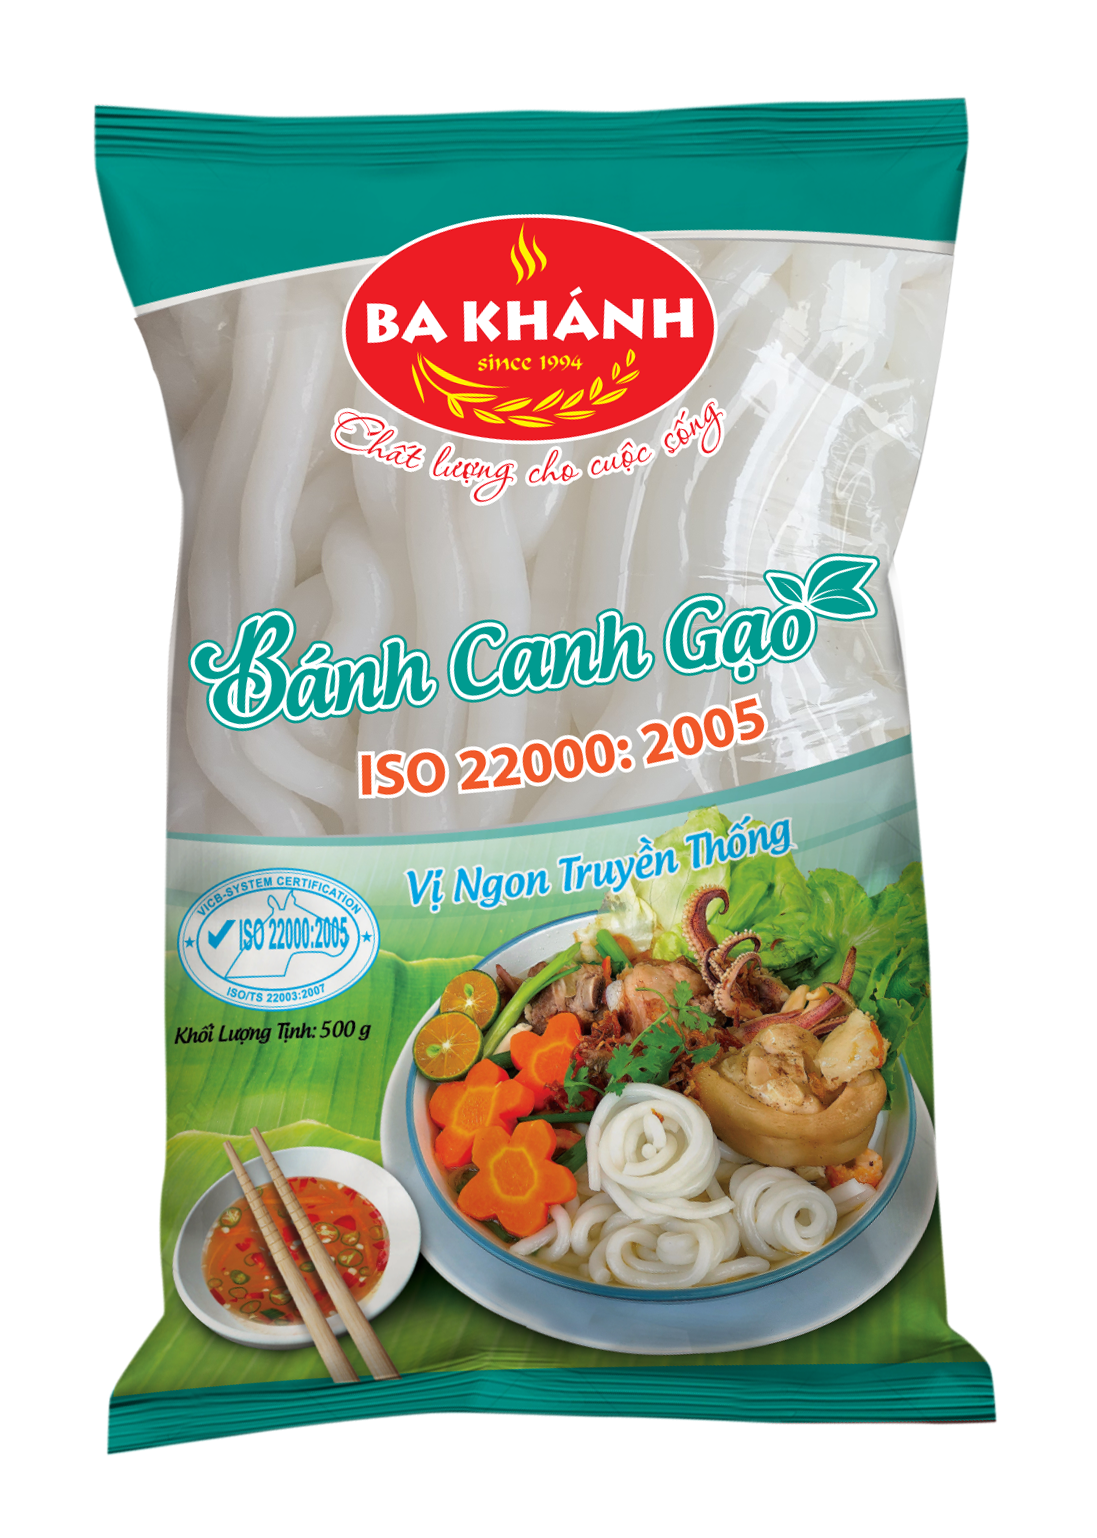 Ba Khanh fresh Banh Canh Gao (500g)